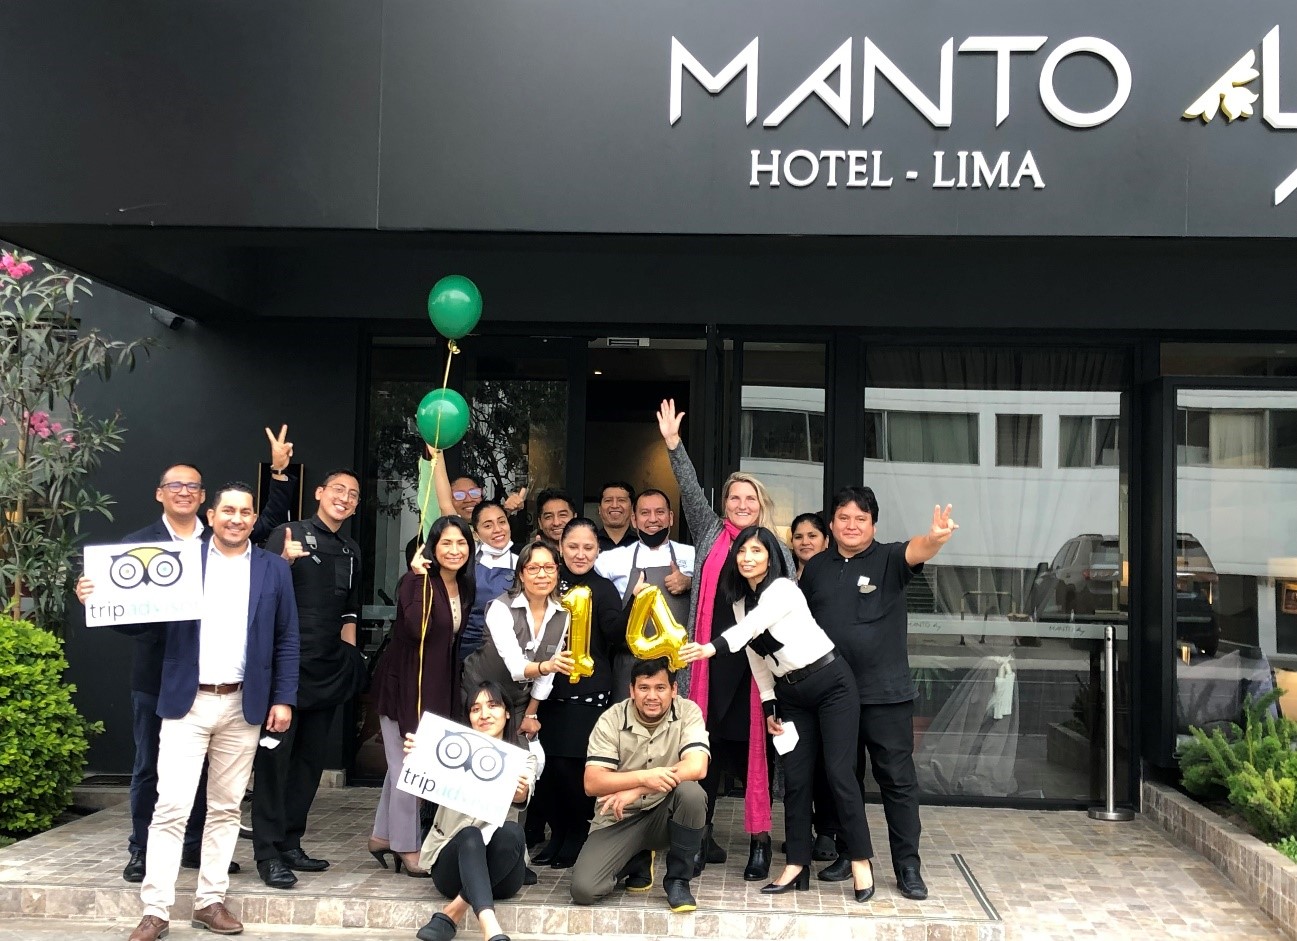 Manto Hotel Lima – MGallery elegido entre los mejores hoteles de Sudamérica según Tripadvisor